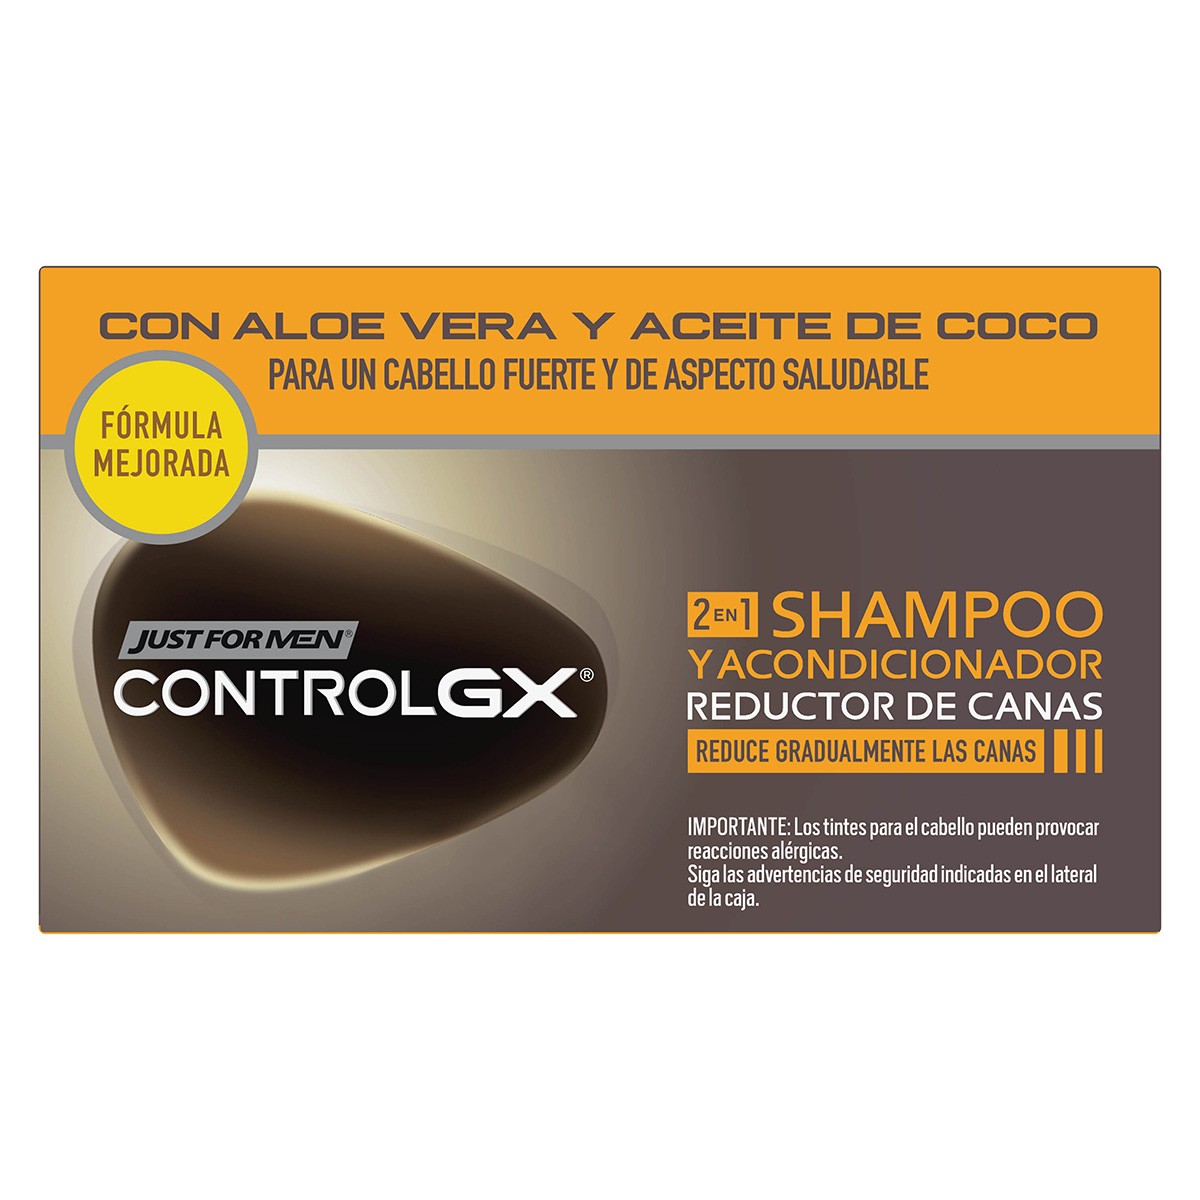 Just for men control GX champú 118ml + acondicionador 150ml